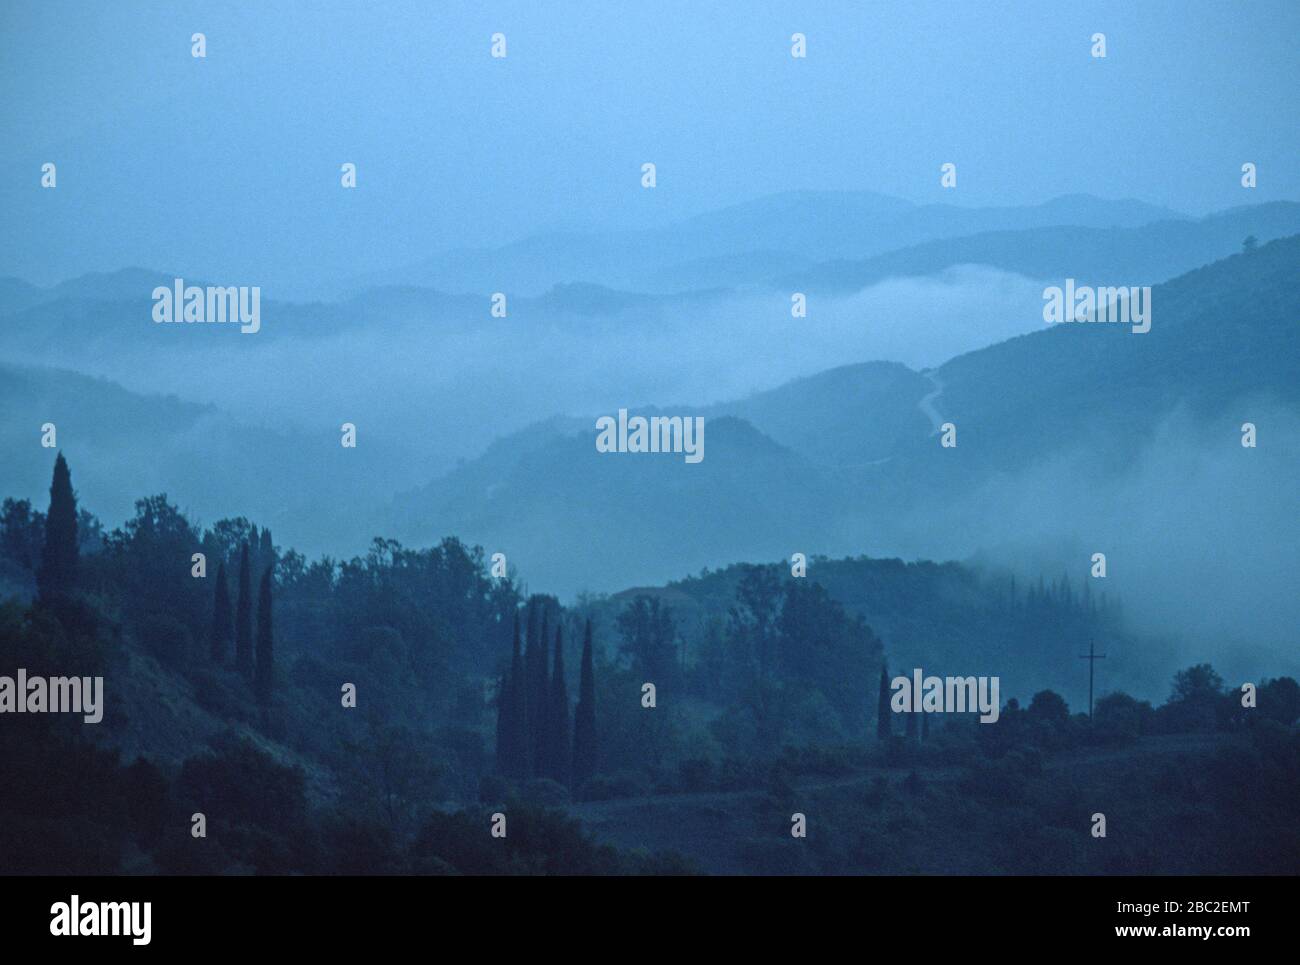 Colline coperte di nebbia nella catena montuosa della Mourgana, vicino al confine albanese in Epiro, Grecia. Visto da vicino al villaggio di Lia (Lias). Foto Stock